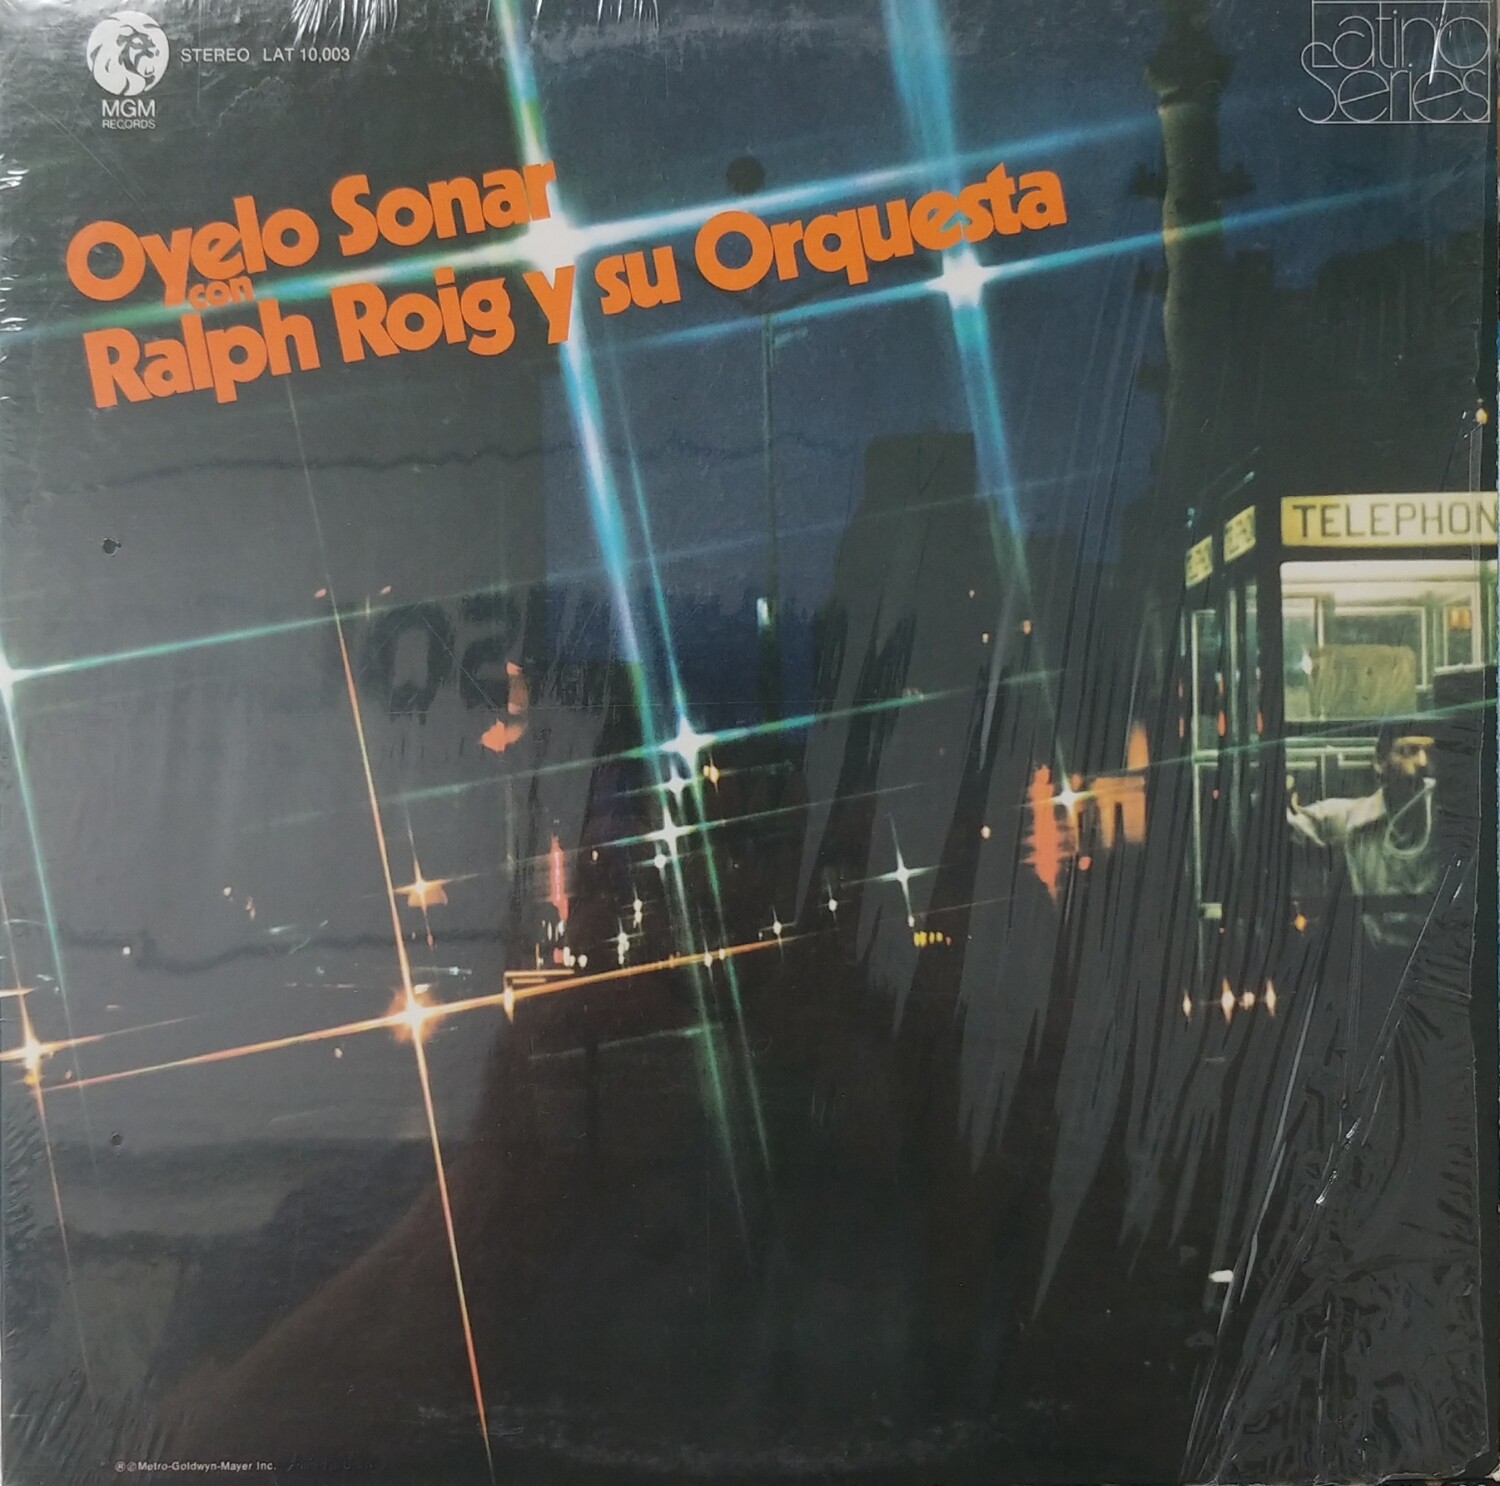 Ralph Roig Y Su Orquesta - Oyelo Sonar